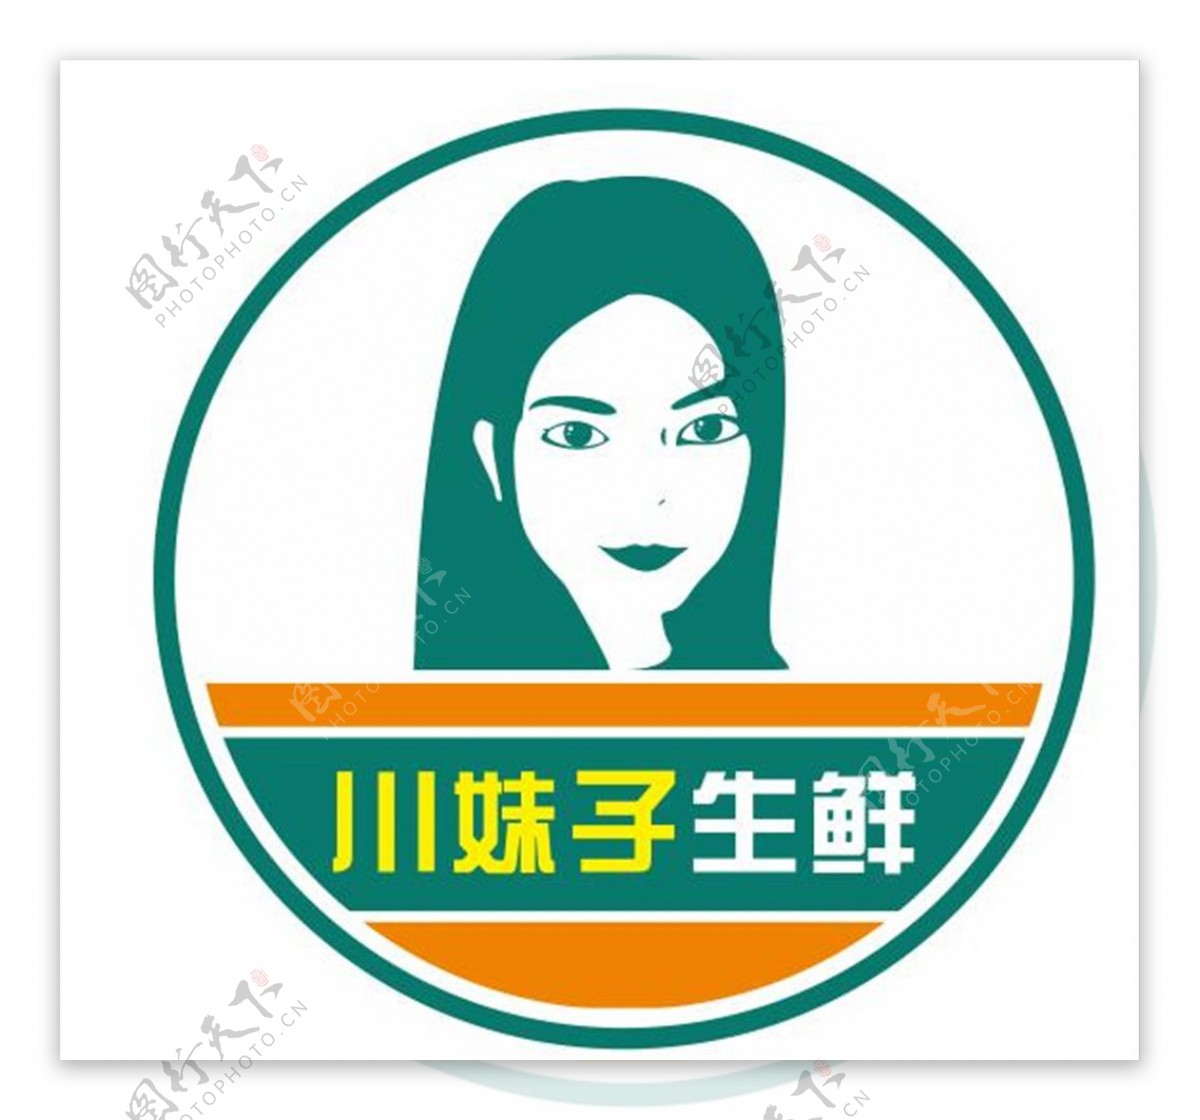 诗宸logo设计设计专栏 设计分享及品牌设计领域博主-诗宸标志设计